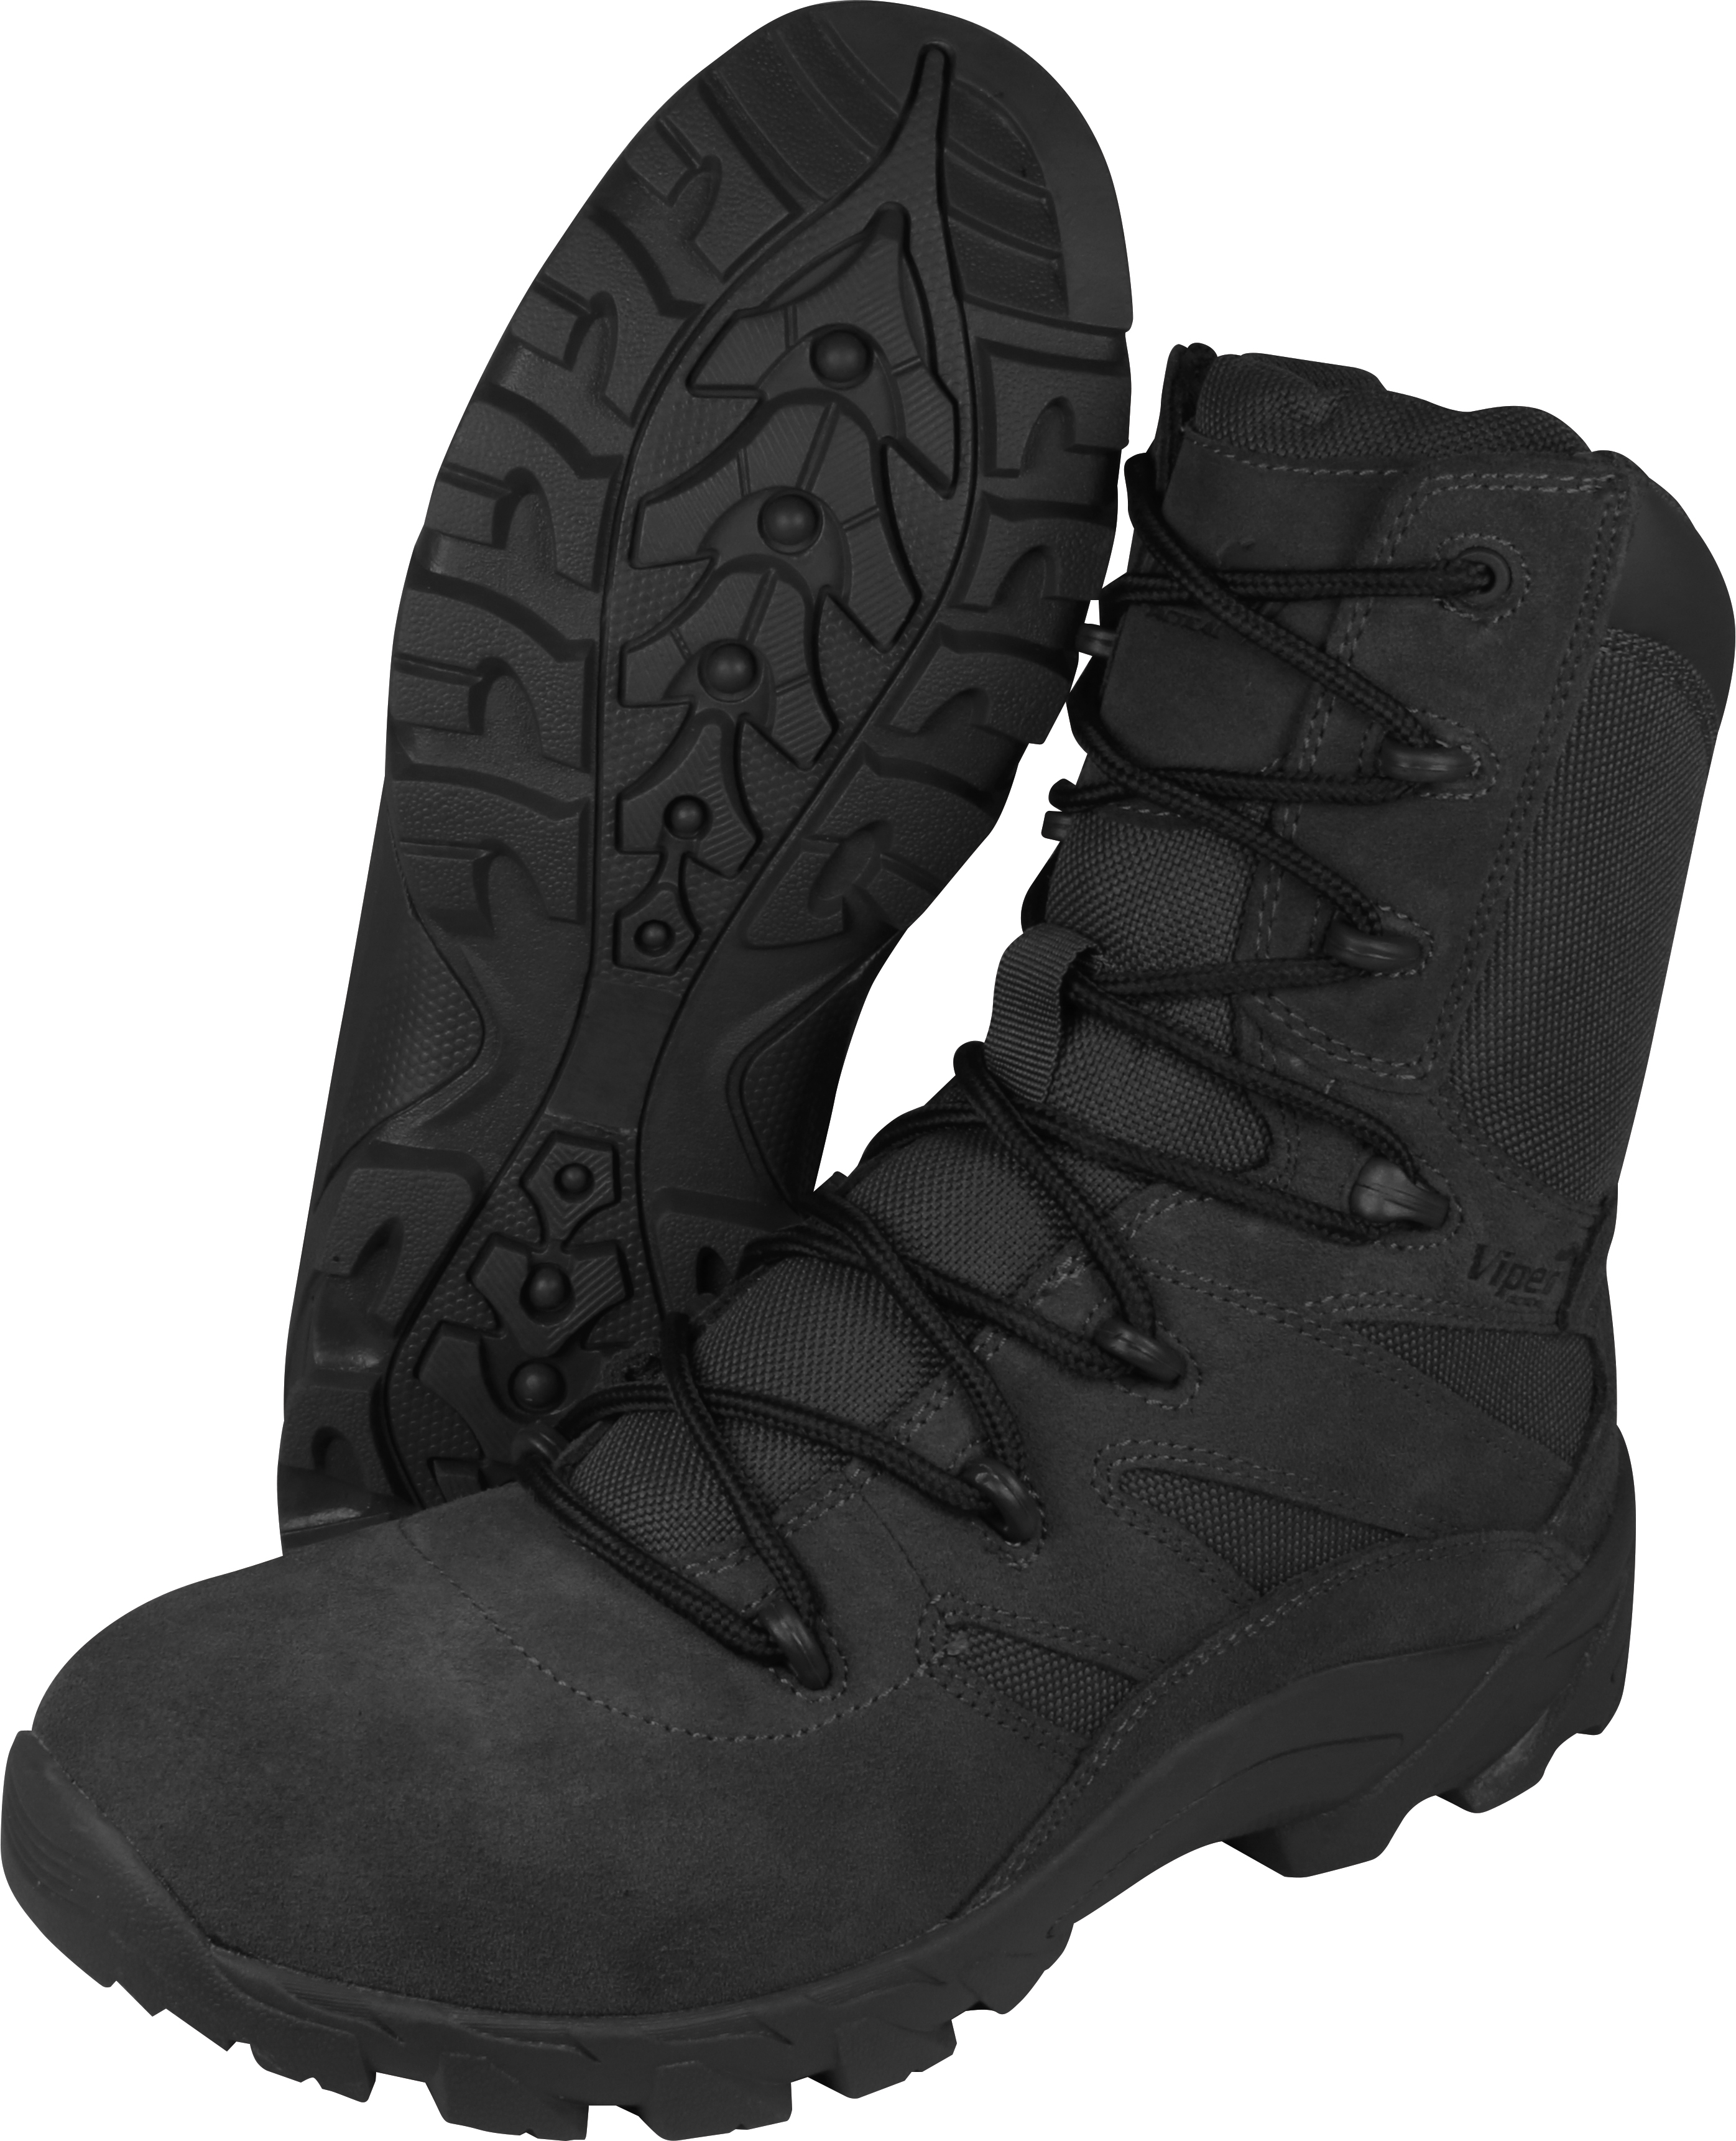 Viper Tactical Covert Boots Black